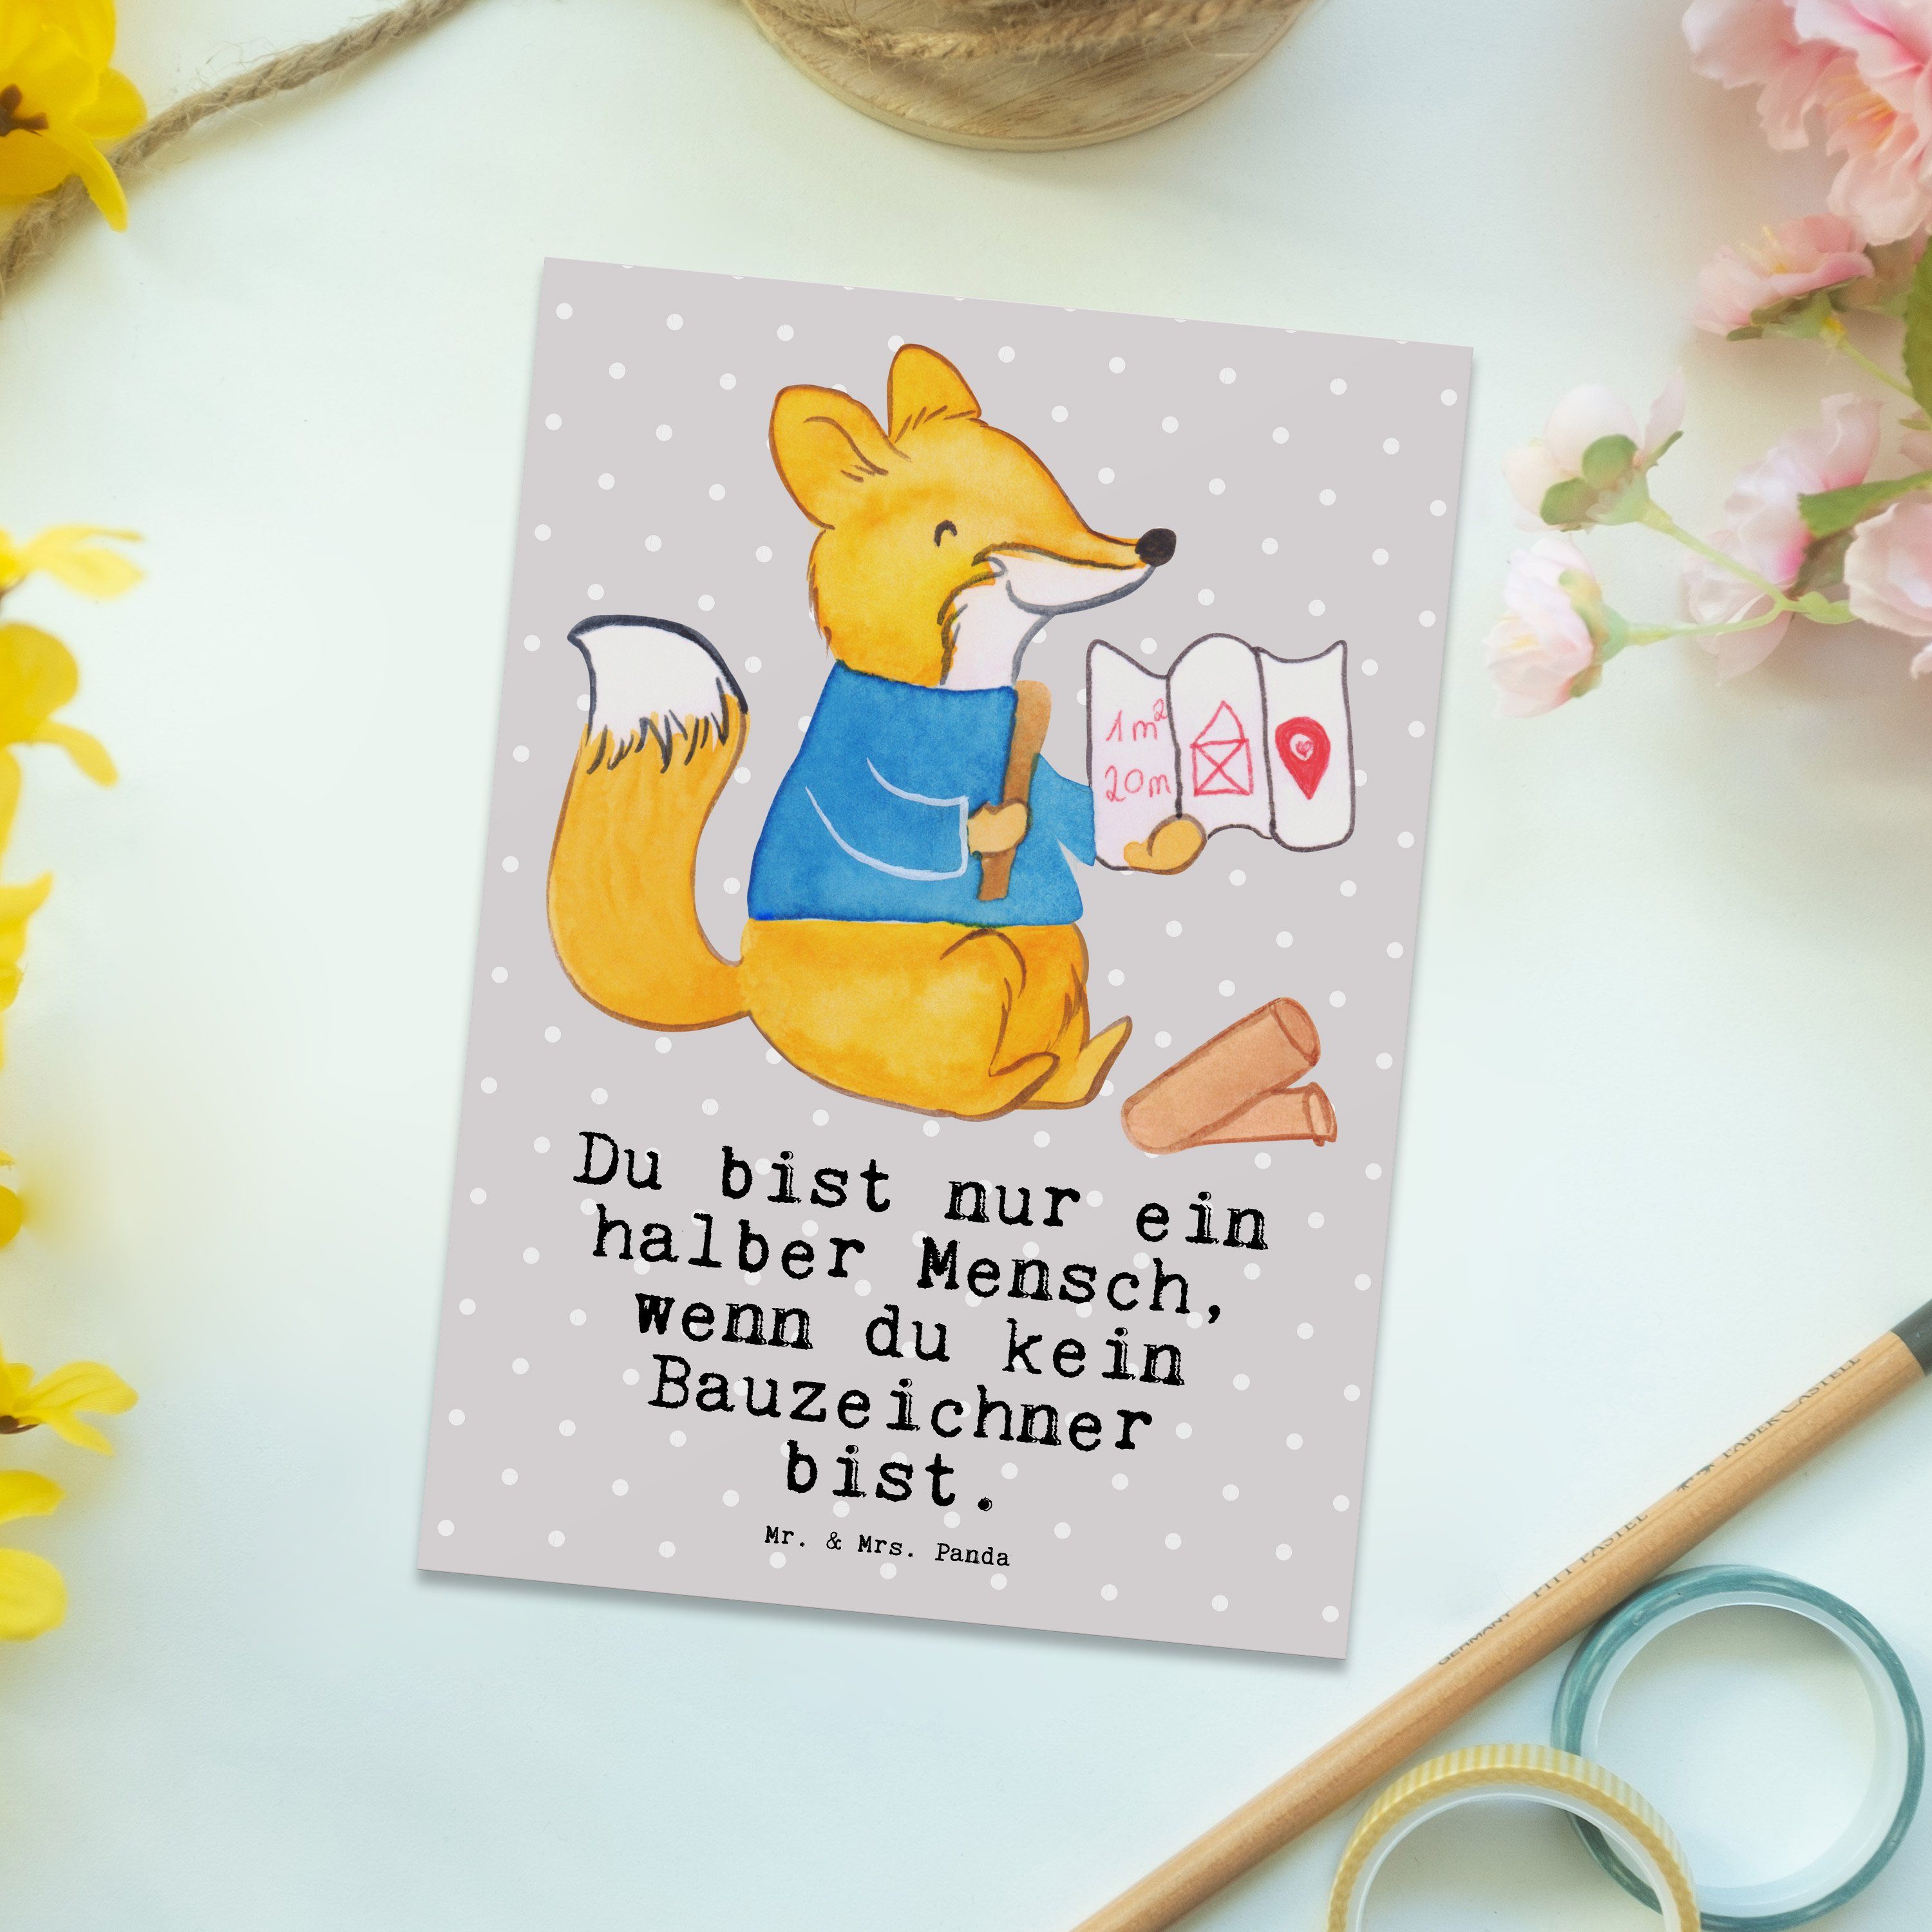 Mr. & Mrs. Panda Postkarte Herz - Bauzeichner - mit Grau Geschenk, Pastell Abschied, Geschenkkar